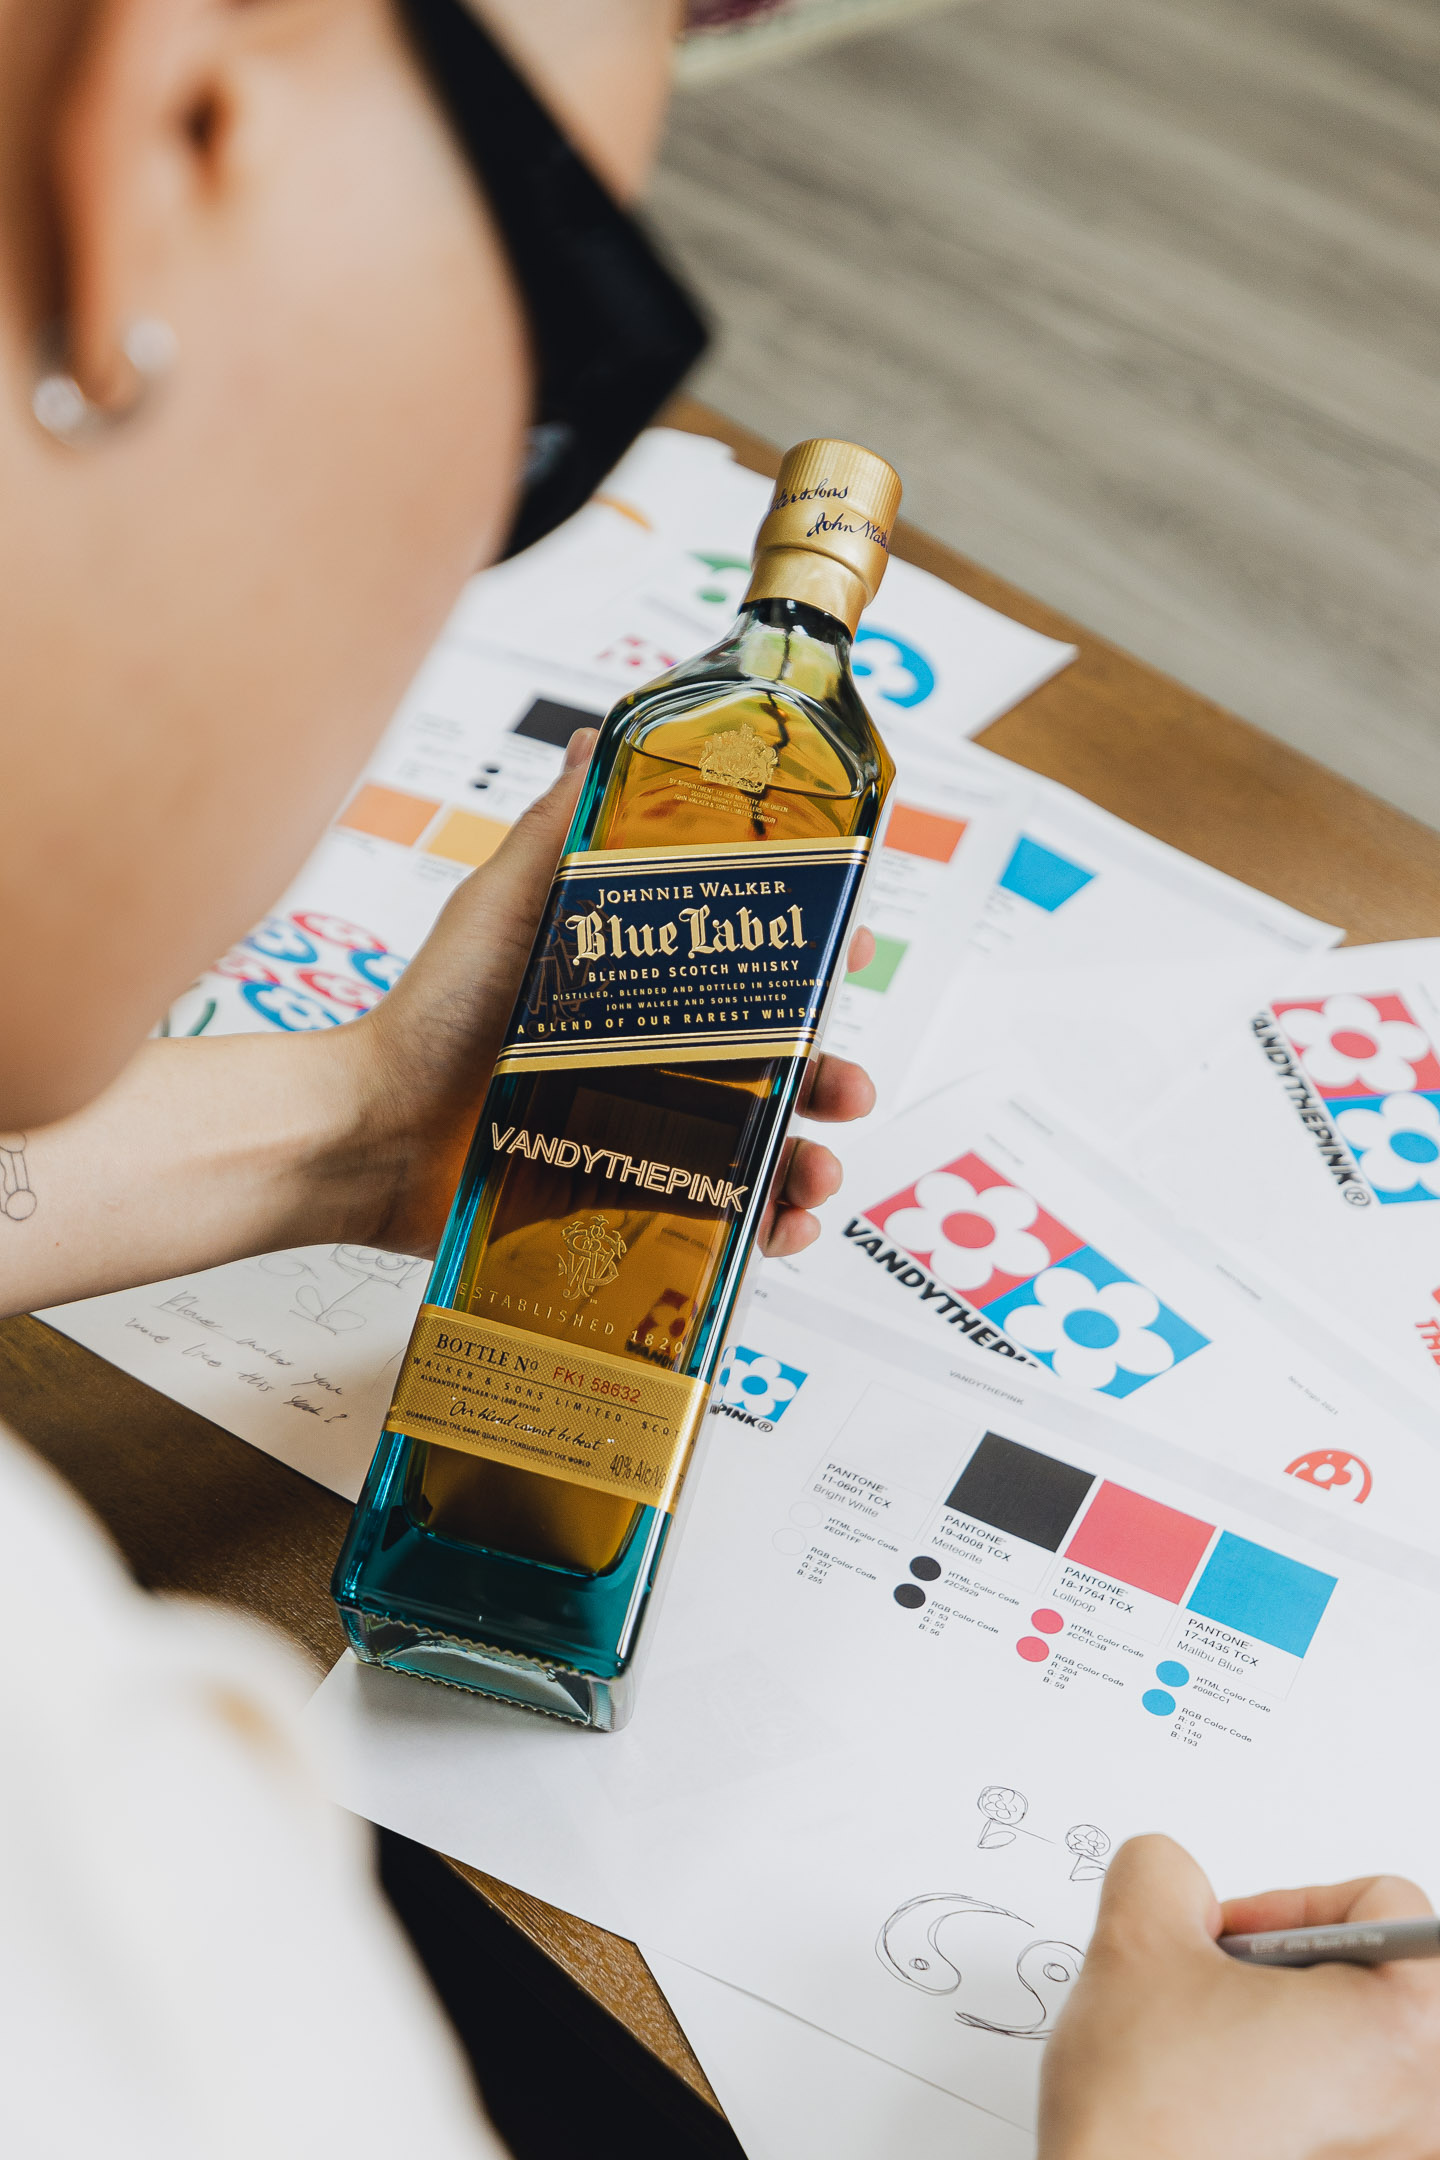 VANDYTHEPINK Works on Designs for Johnnie Walker Blue Label Limited Edition Bottle